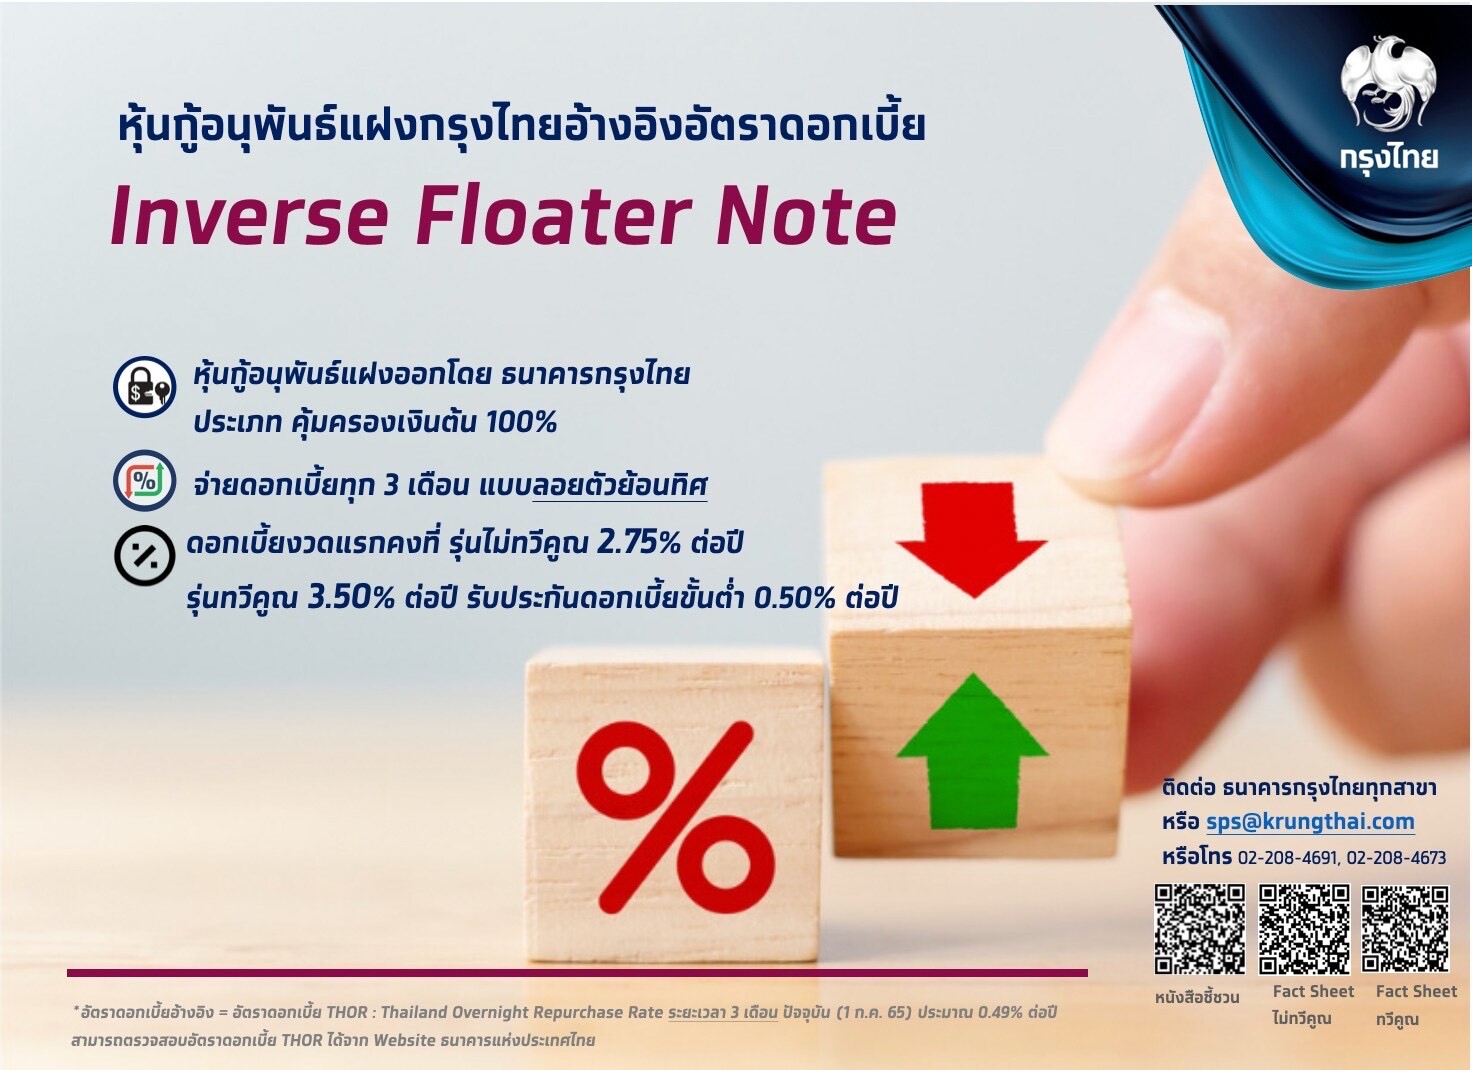 กรุงไทย"จัดใหญ่ ขายเพิ่มหุ้นกู้อนุพันธ์แฝง "Krungthai Inverse Floater" การันตีเงินต้น100% ดีเดย์ 8-12 ก.ค.นี้